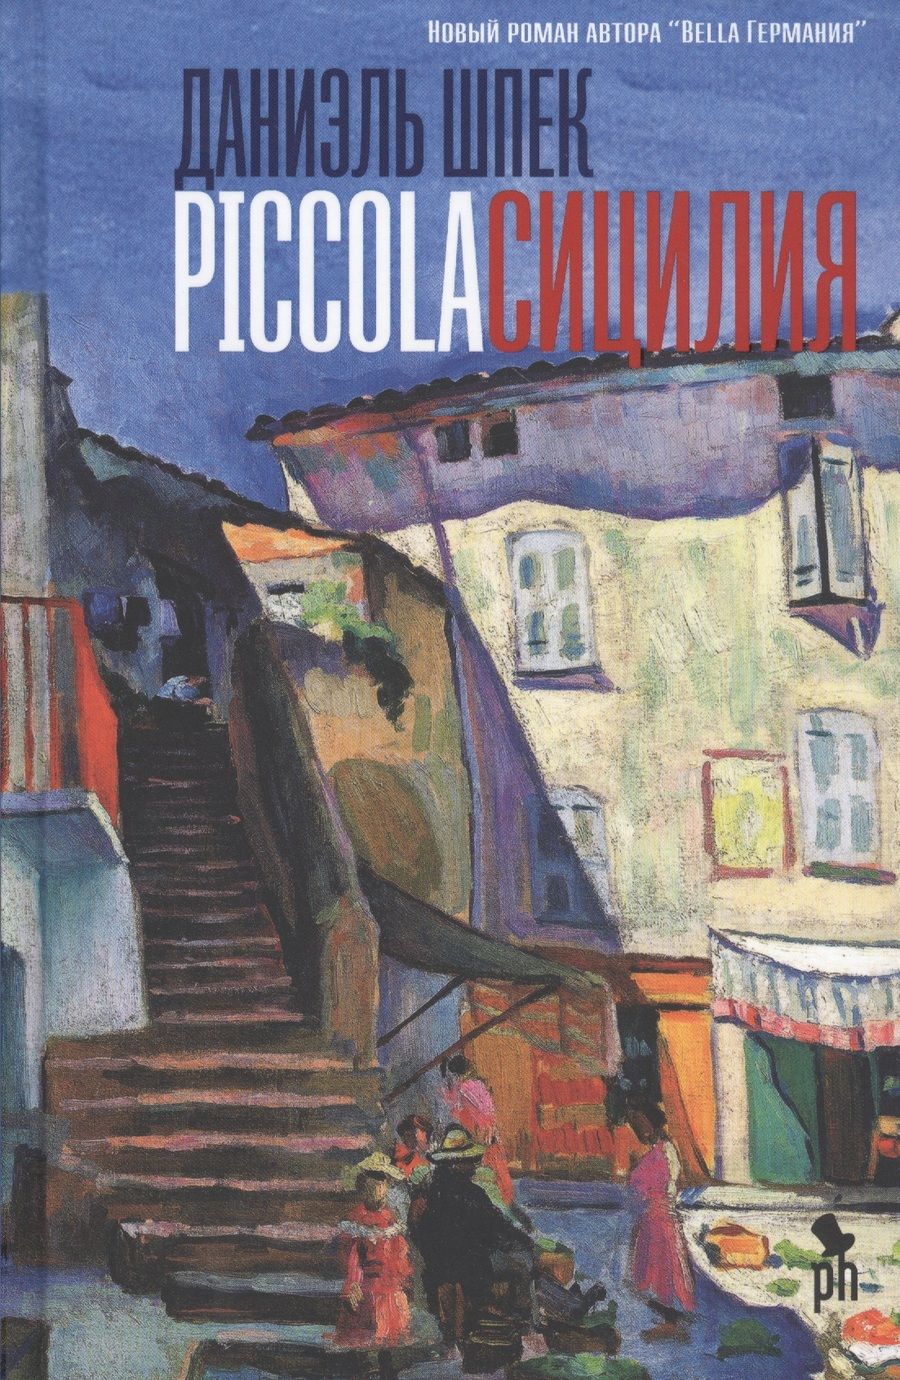 Обложка книги "Шпек: Piccola Сицилия"